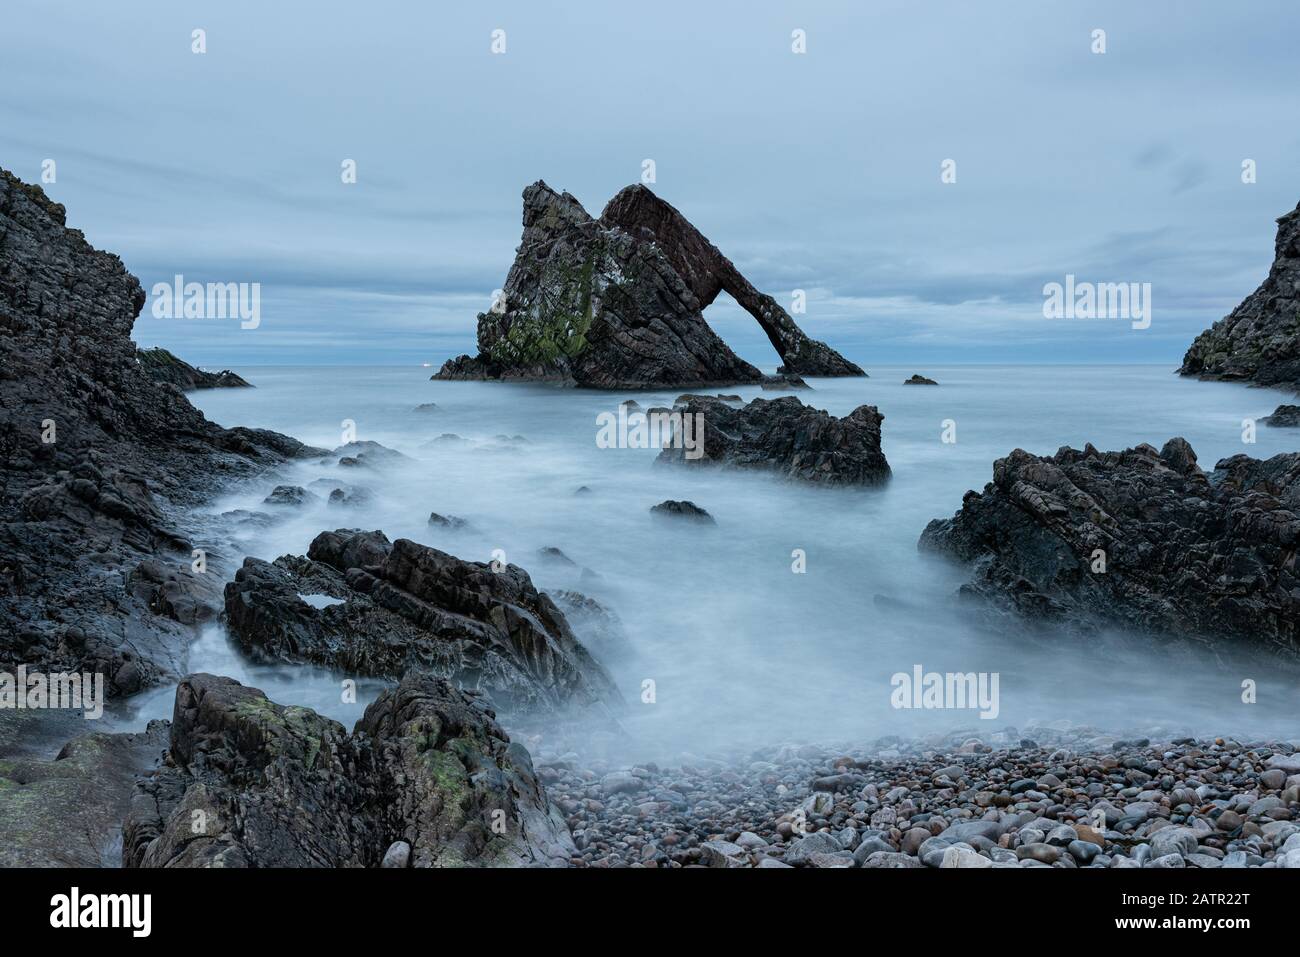 Images of the Scottish Morayshire coastline Stock Photo - Alamy